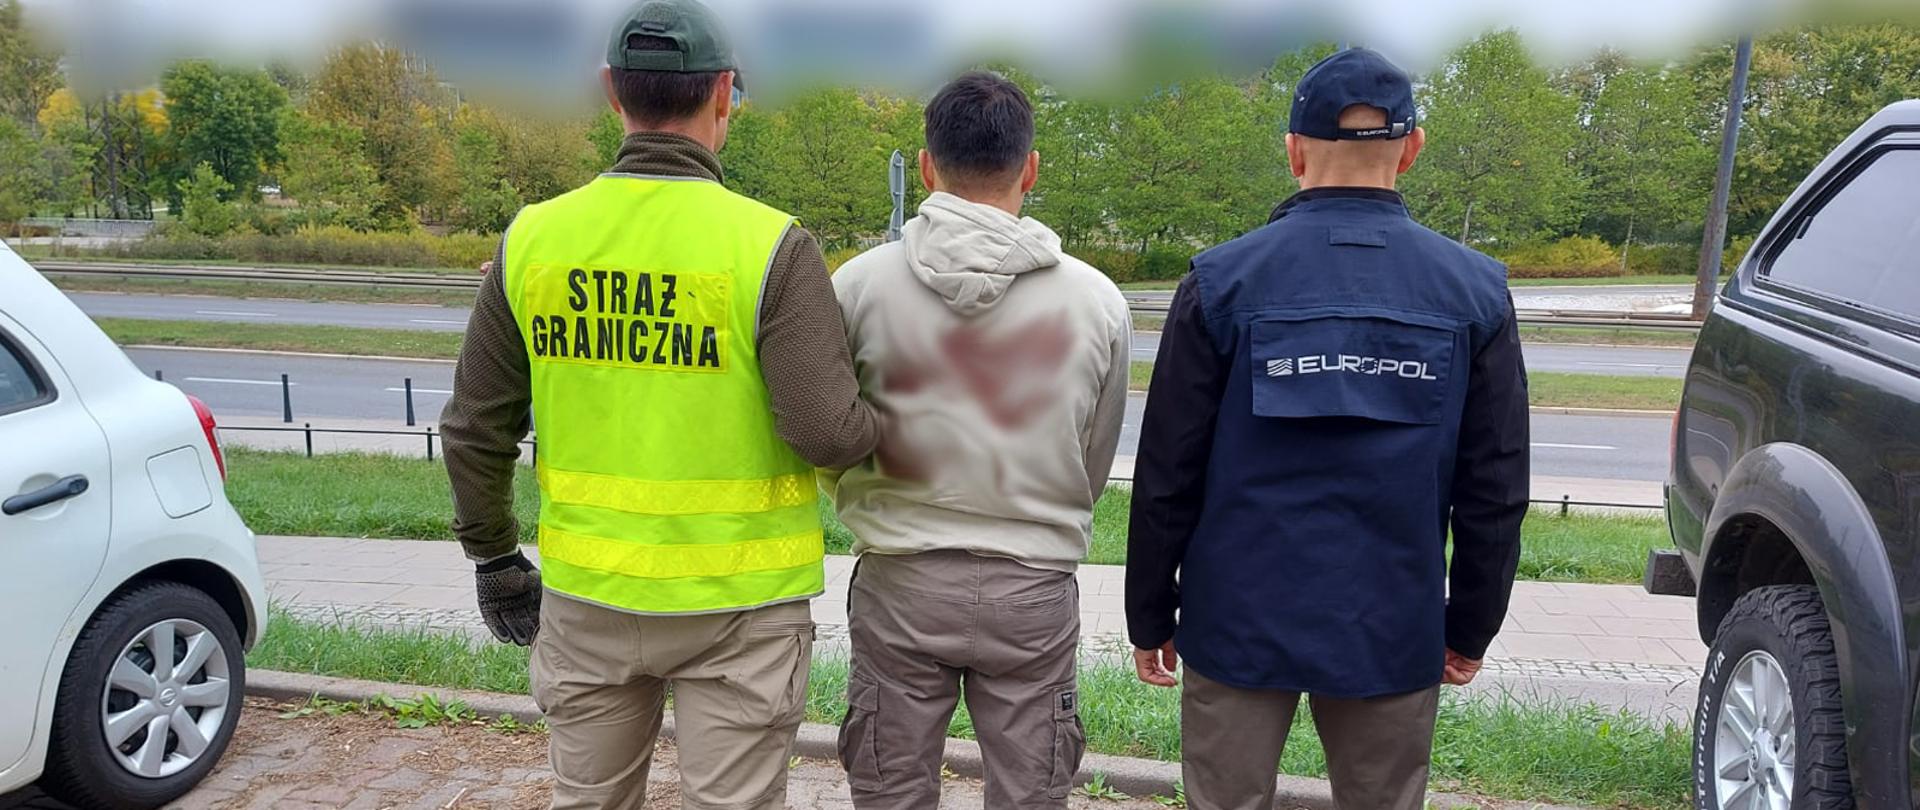 Zdjęcie przedstawia funkcjonariuszy służb Straży Granicznej i Eurlopolu z osobą zatrzymaną w ramach prowadzonych śledztw